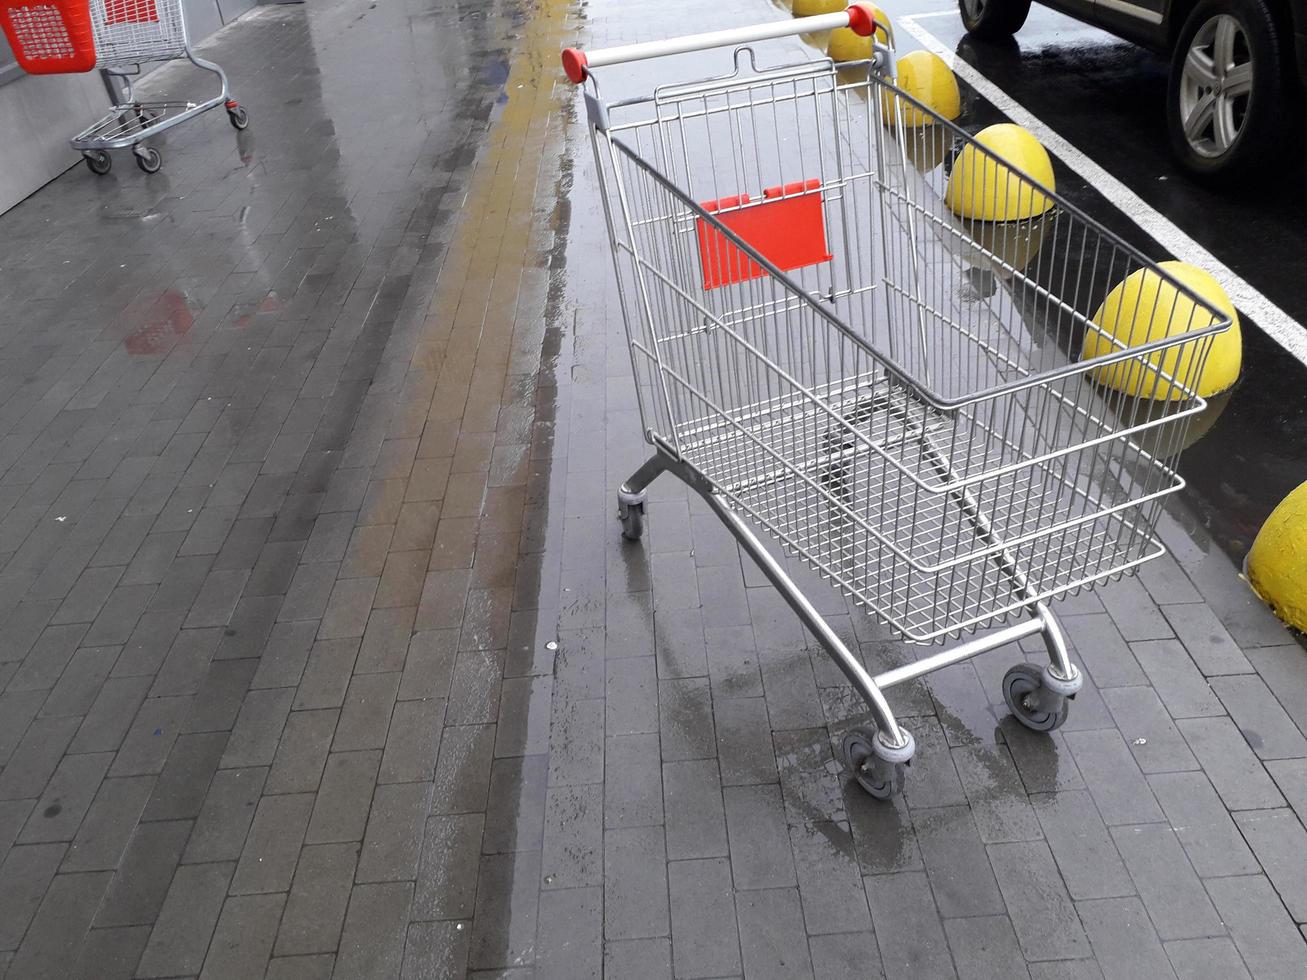 carrinhos para produtos de mercearia ficam perto de um supermercado na rua foto